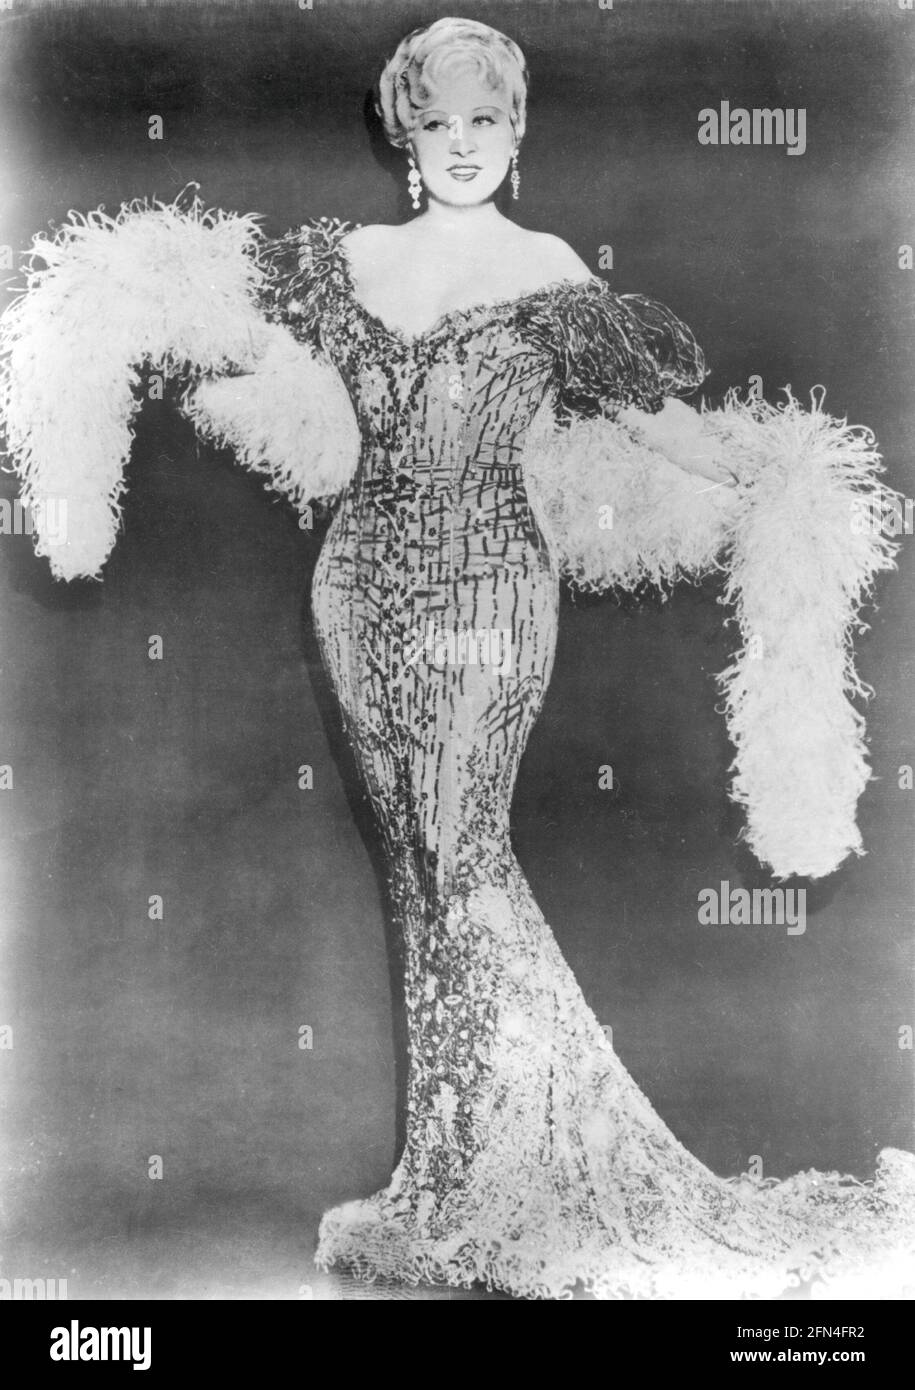 West, Mae, 17.8.1893 - 22.11.1980, actrice américaine, pleine longueur, Dans la robe de soirée, vers les années 1930, LES DROITS-SUPPLÉMENTAIRES-AUTORISATION-INFO-NON-DISPONIBLE Banque D'Images